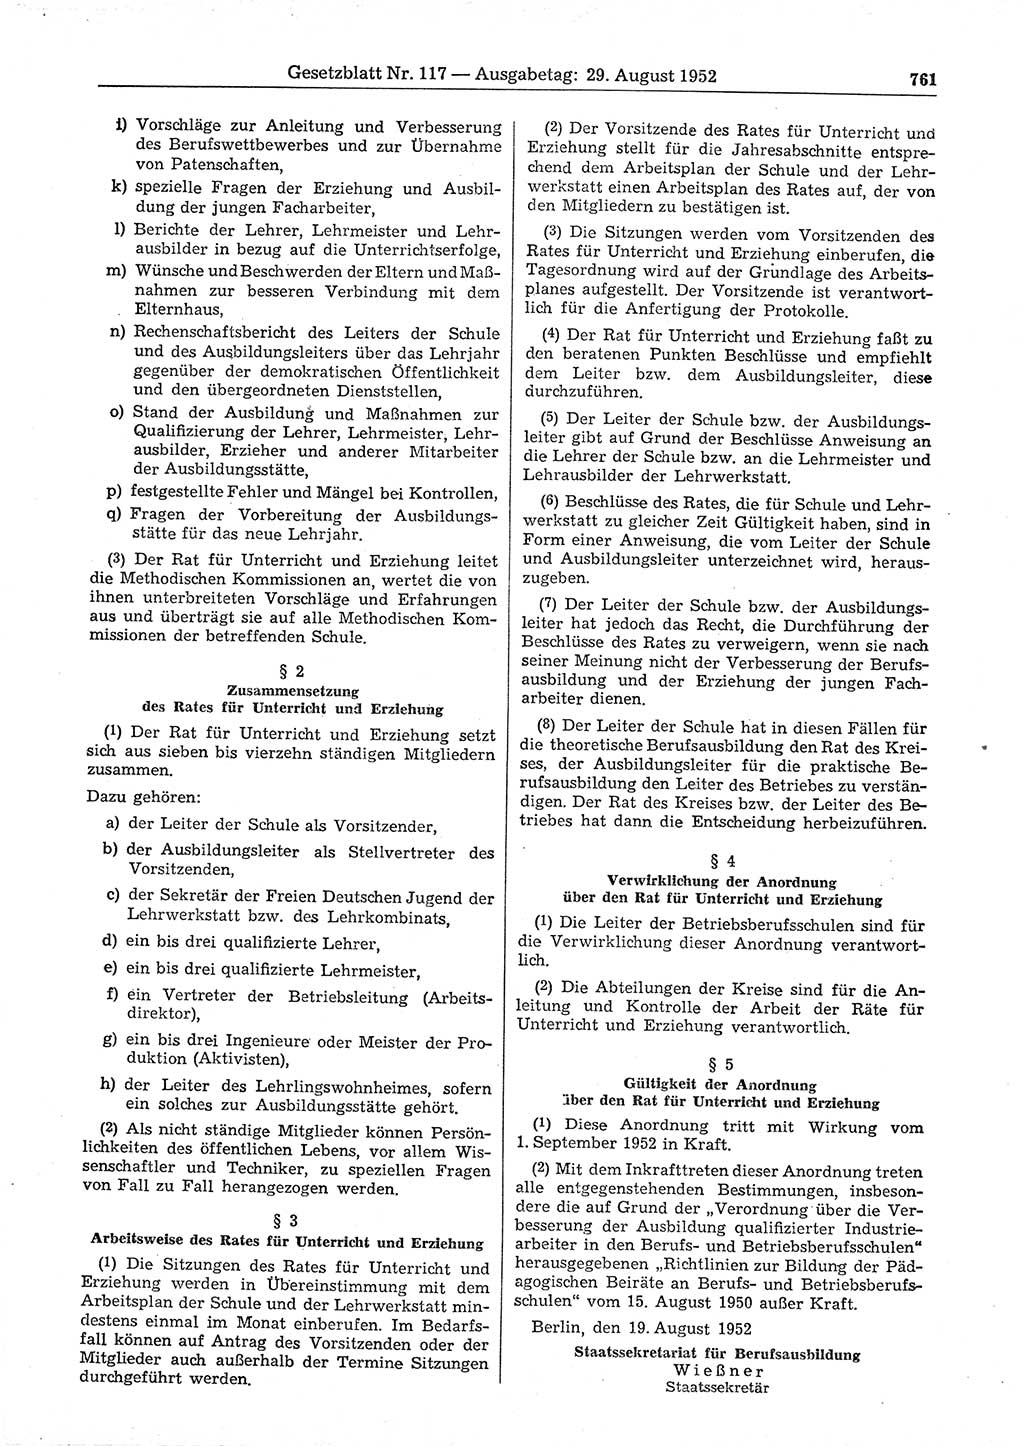 Gesetzblatt (GBl.) der Deutschen Demokratischen Republik (DDR) 1952, Seite 761 (GBl. DDR 1952, S. 761)